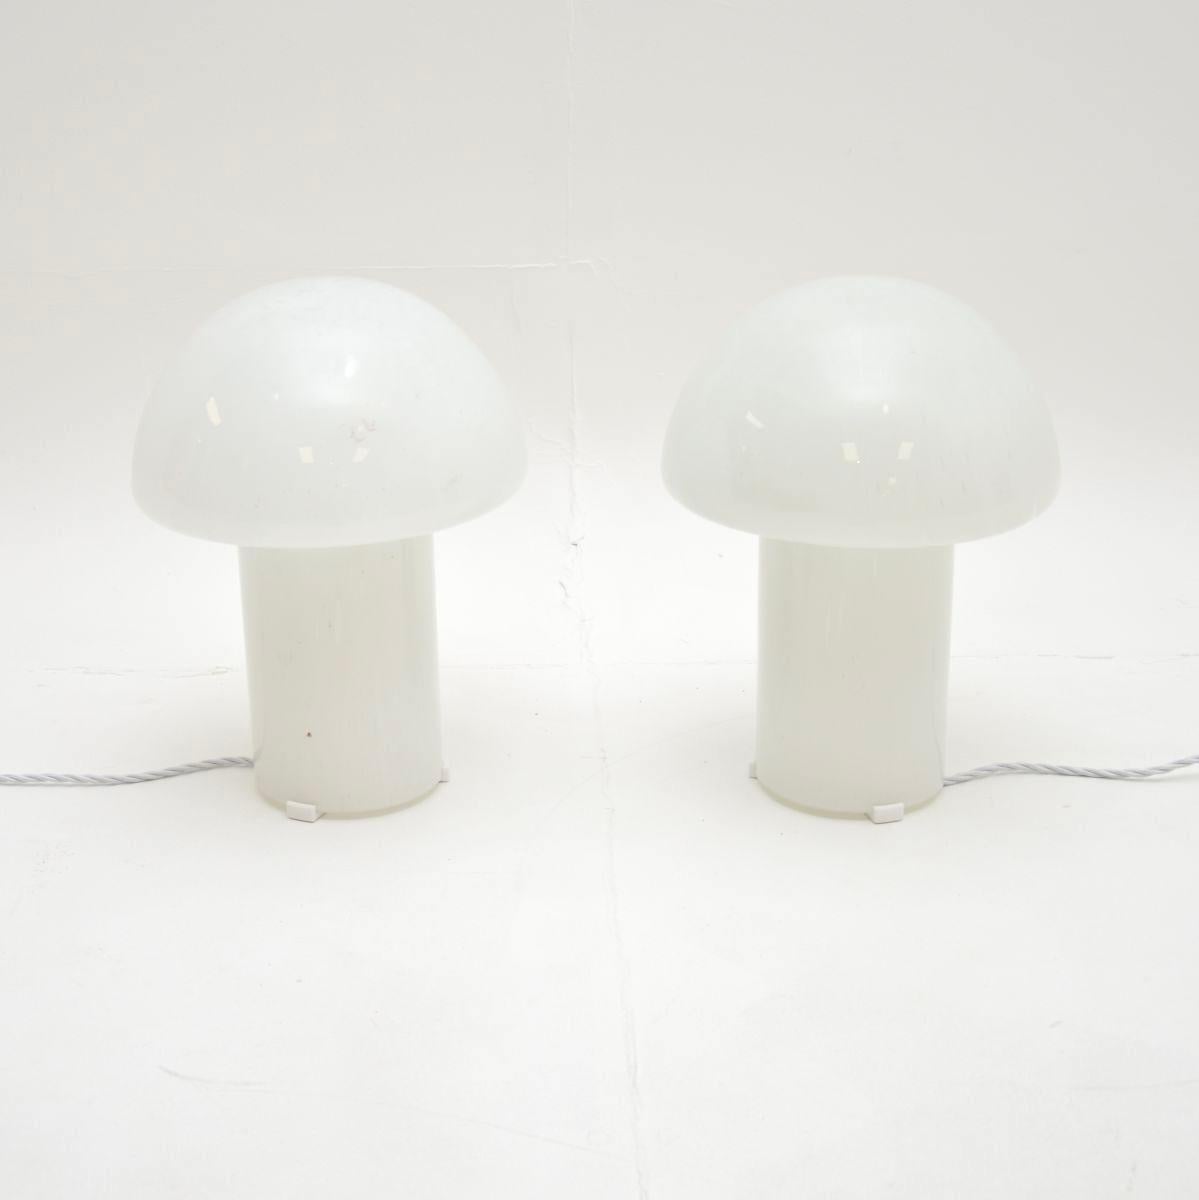 Une paire de lampes champignon en verre Murano de style et de belle facture. Ils ont été fabriqués en Italie et datent des années 1970.

La qualité est exceptionnelle, ils sont d'une grande taille avec un design élégant. Le verre blanc présente des